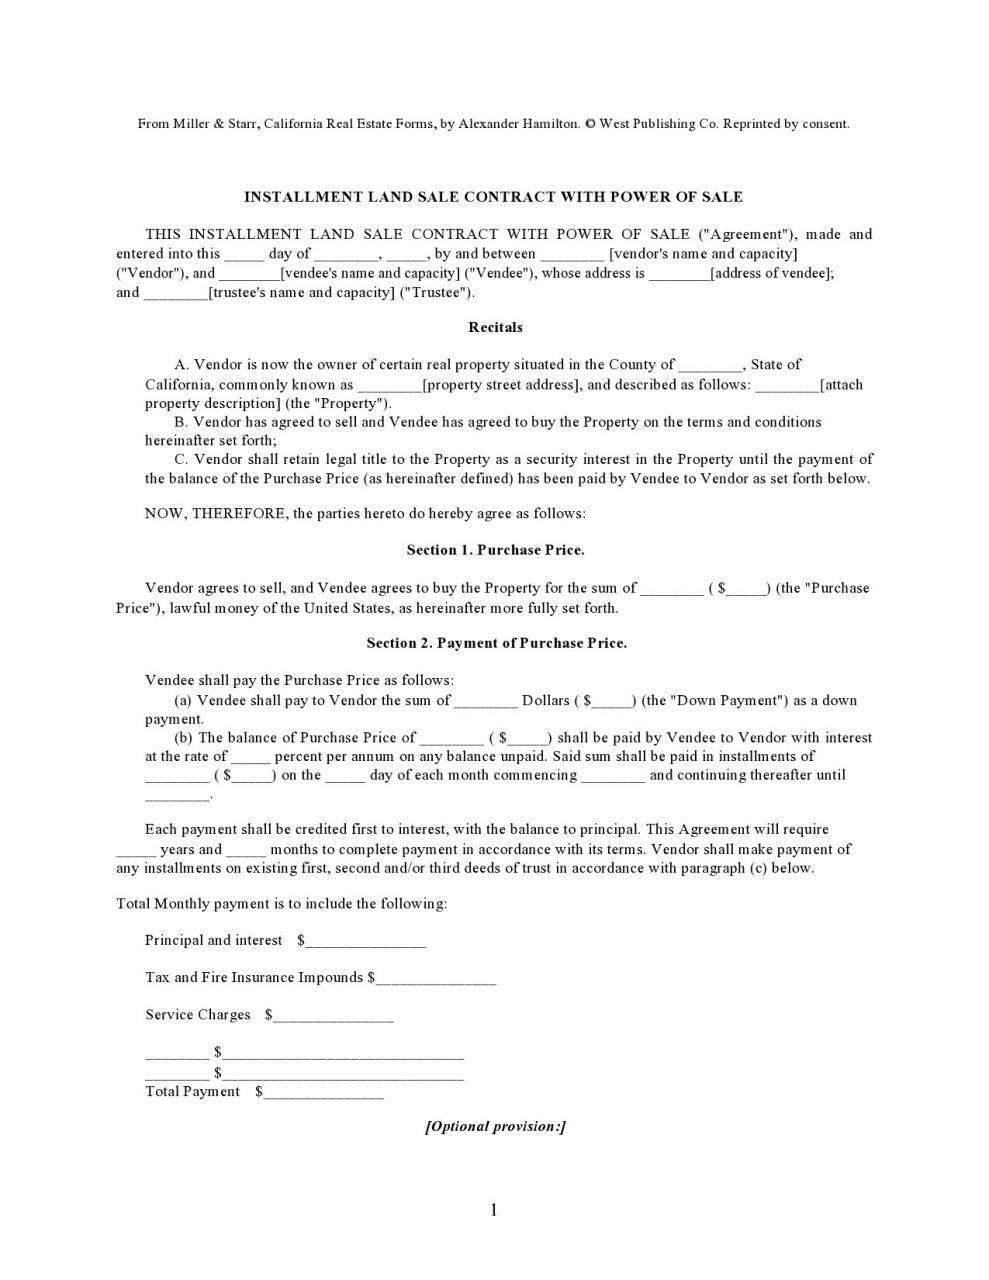 formulario de contrato de tierra gratis 10